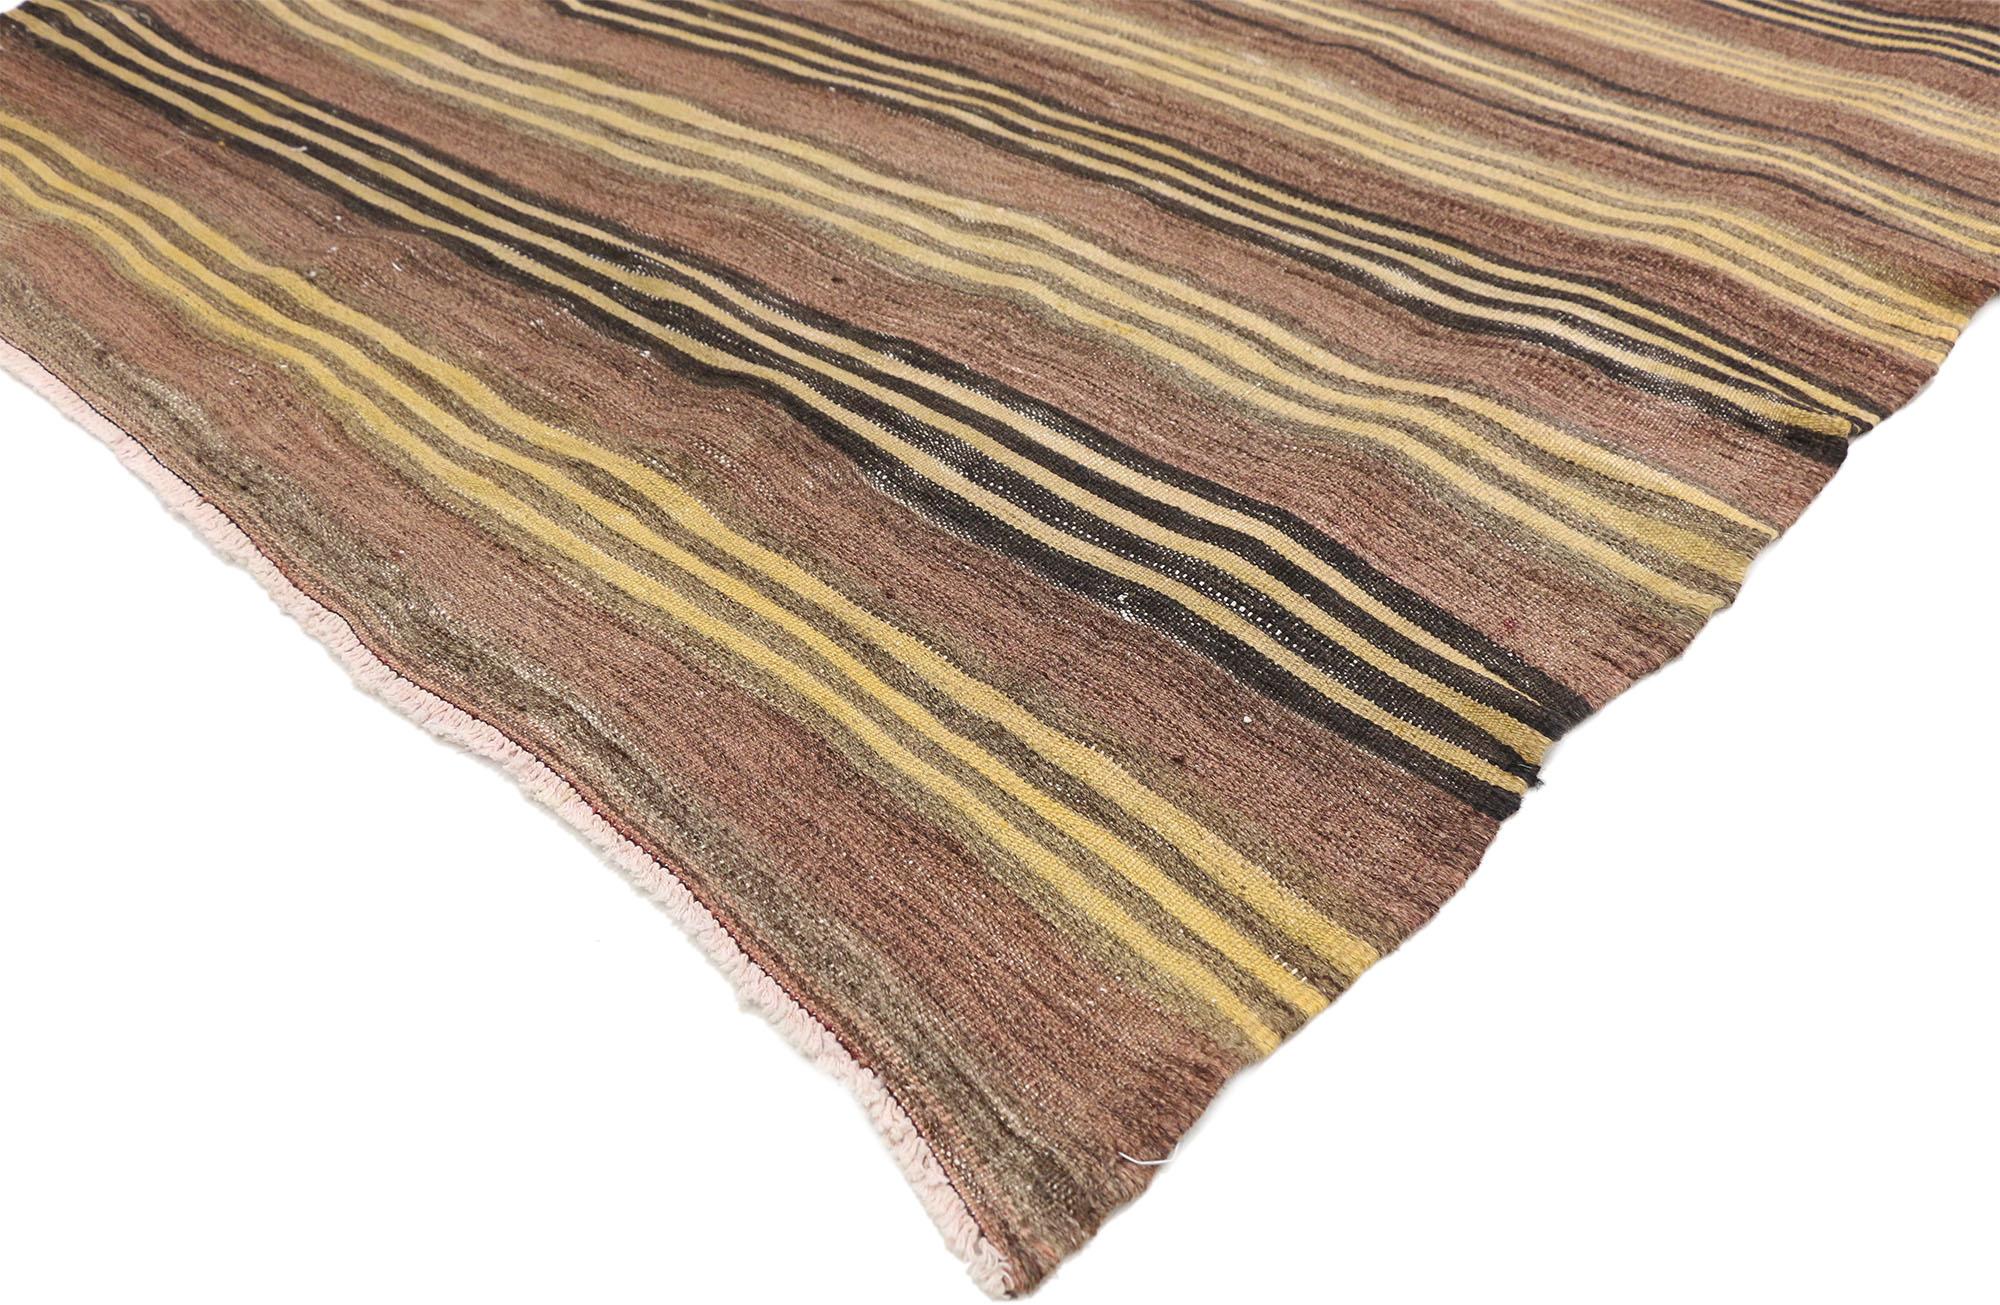 74875 Türkischer Kilim-Teppich mit Bayadere-Streifen, Flachgewebe, gestreift, quadratisch, 04'05 x 04'08. Dieser handgewebte türkische Kilim-Teppich mit modernem Stil zeichnet sich durch ein Muster aus schmalen und breiten Streifen aus, die einen